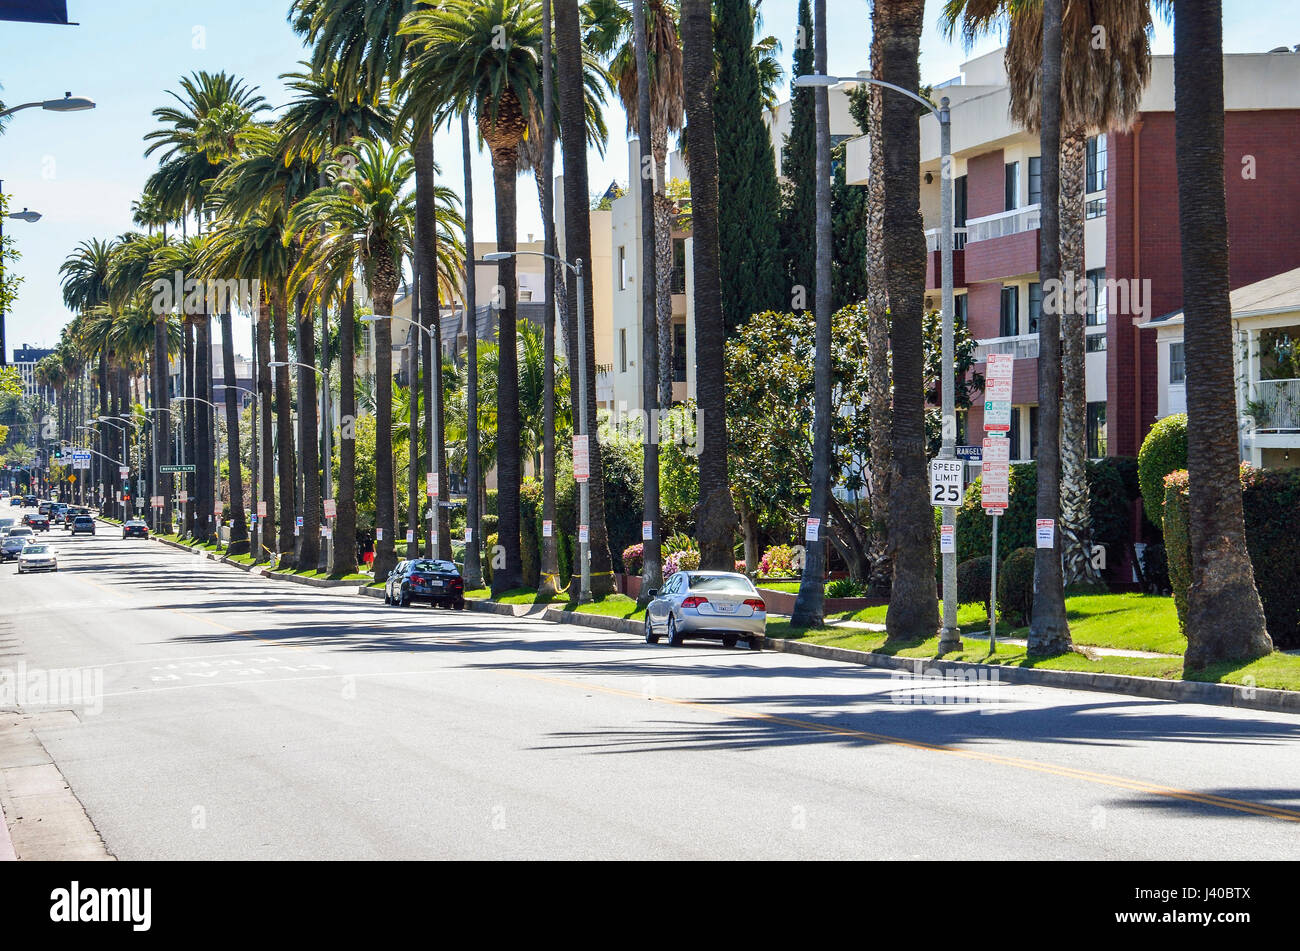 Los Angeles, USA - 9. März 2014: Rangely Beverly street in der Innenstadt von LA mit Wohnhäusern und Palmen Stockfoto